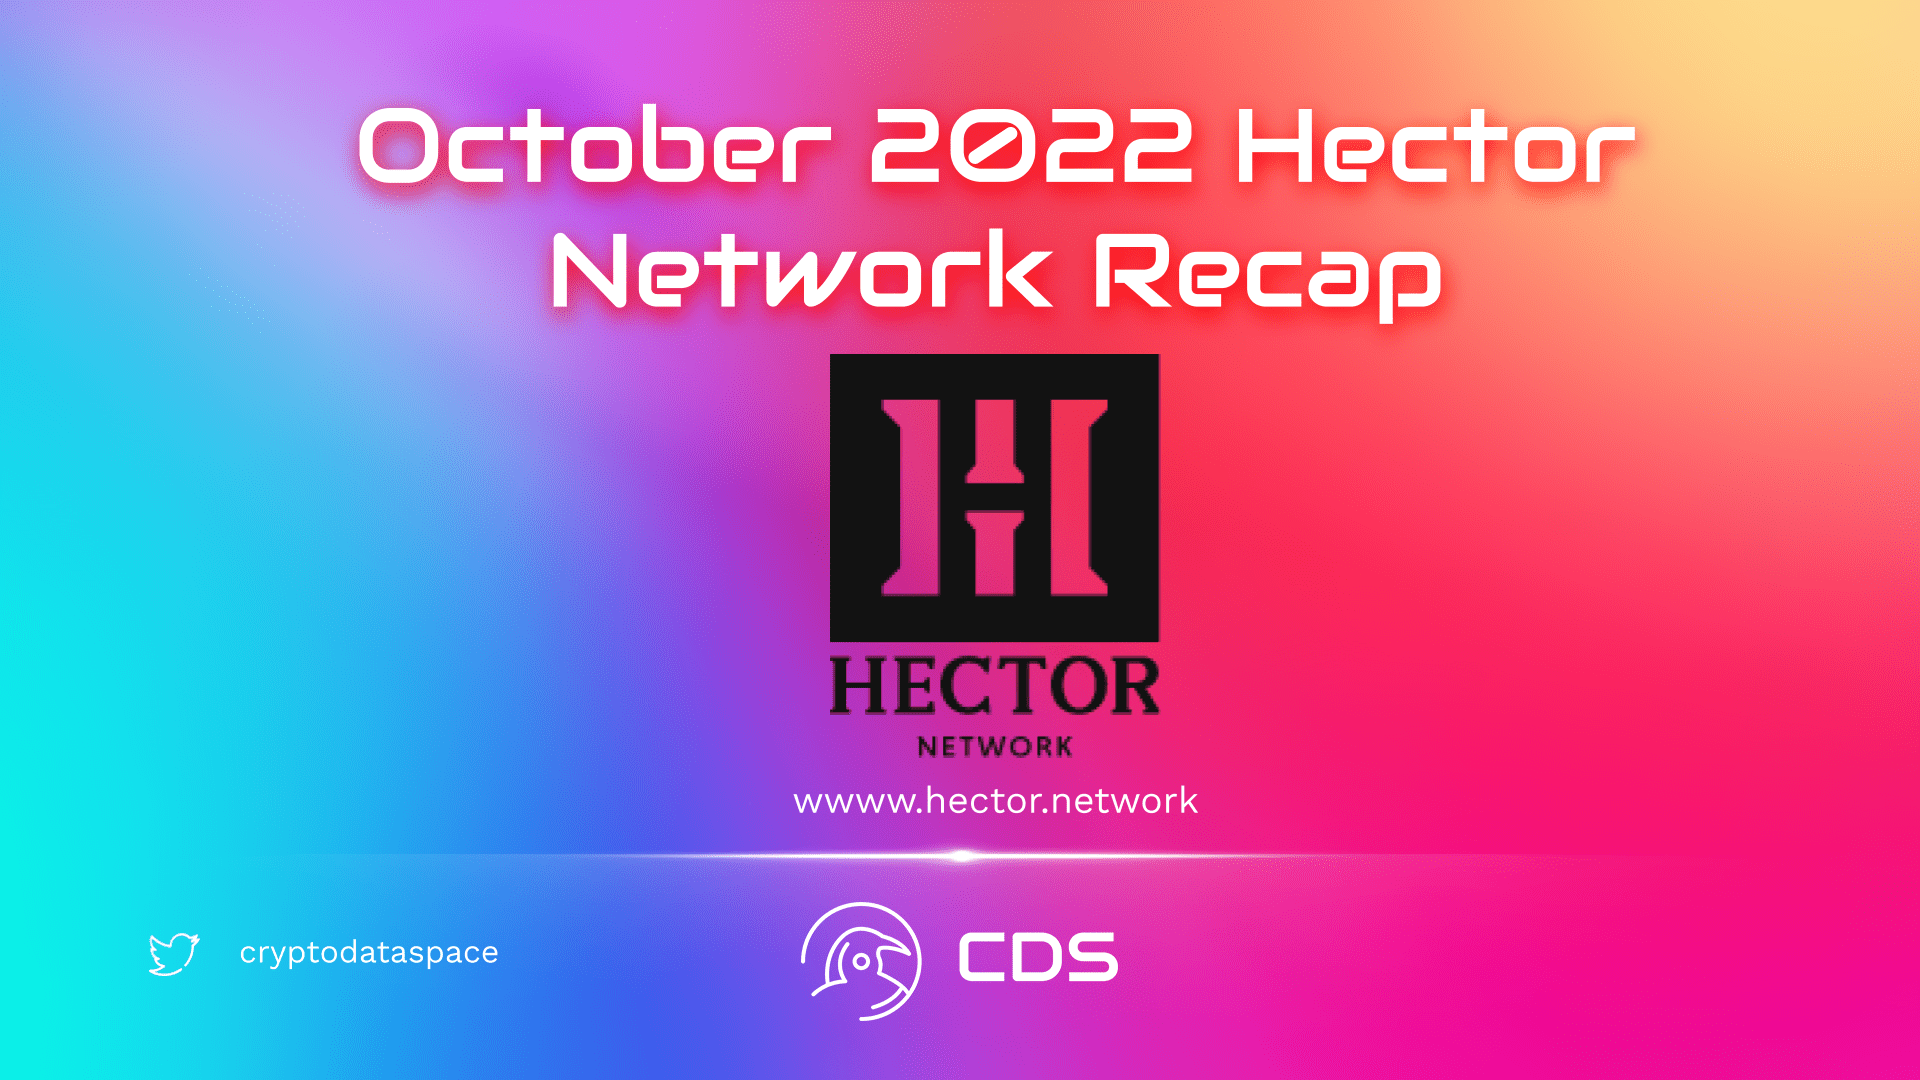 October 2022 Hector Network Recap